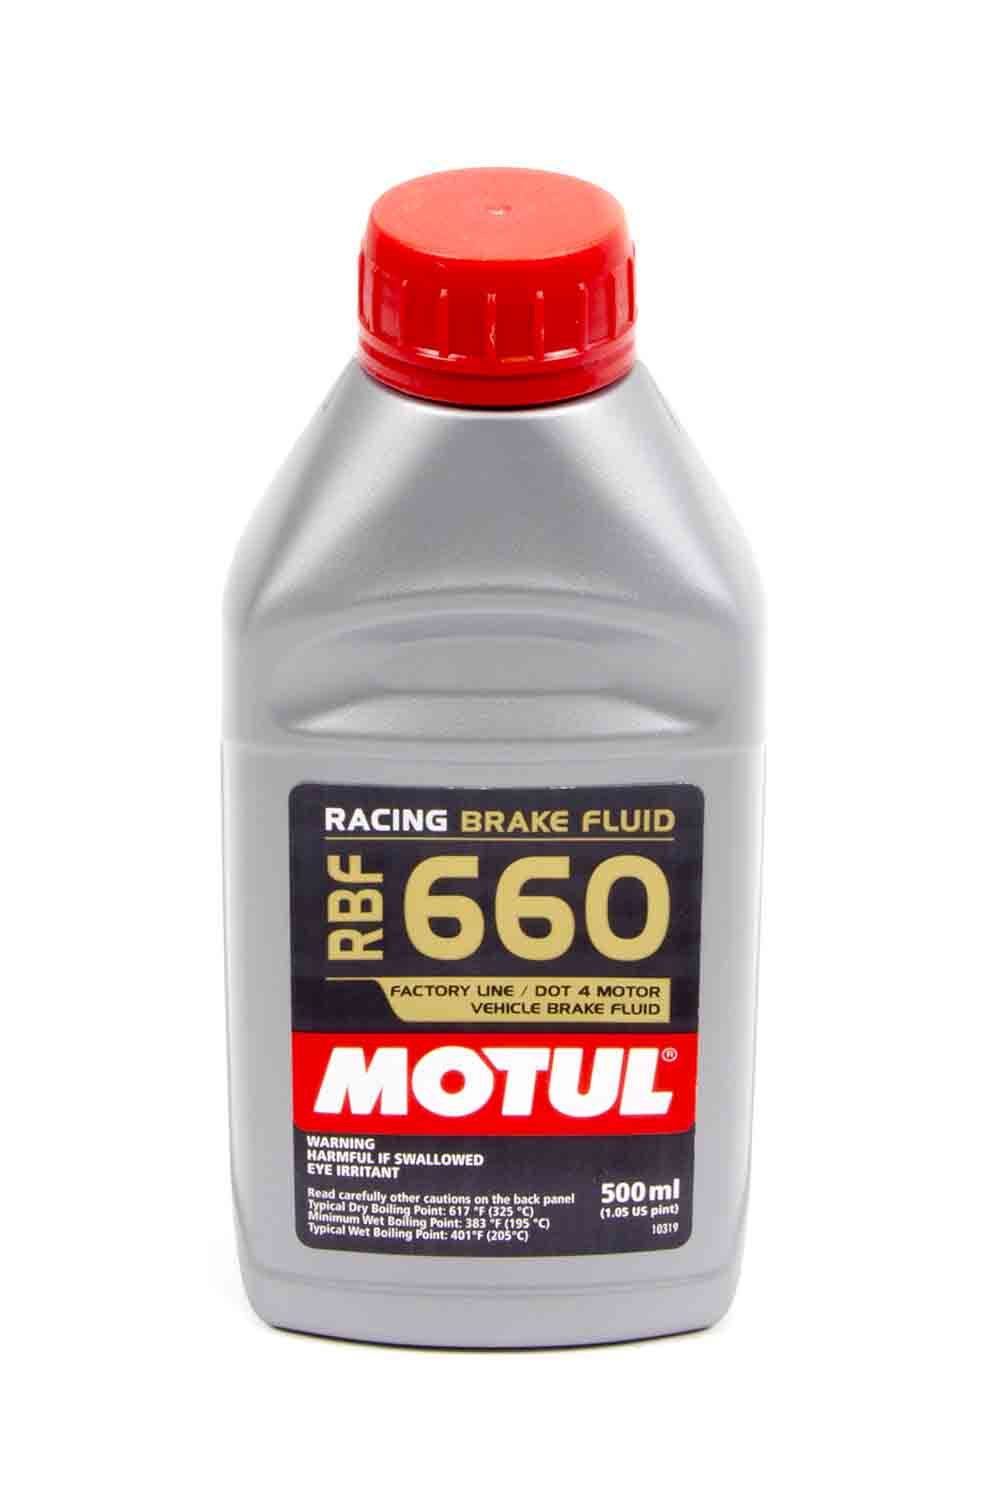 ALLSTAR, Brake Fluid, Motul 660, DOT 4, 500 ml, Each